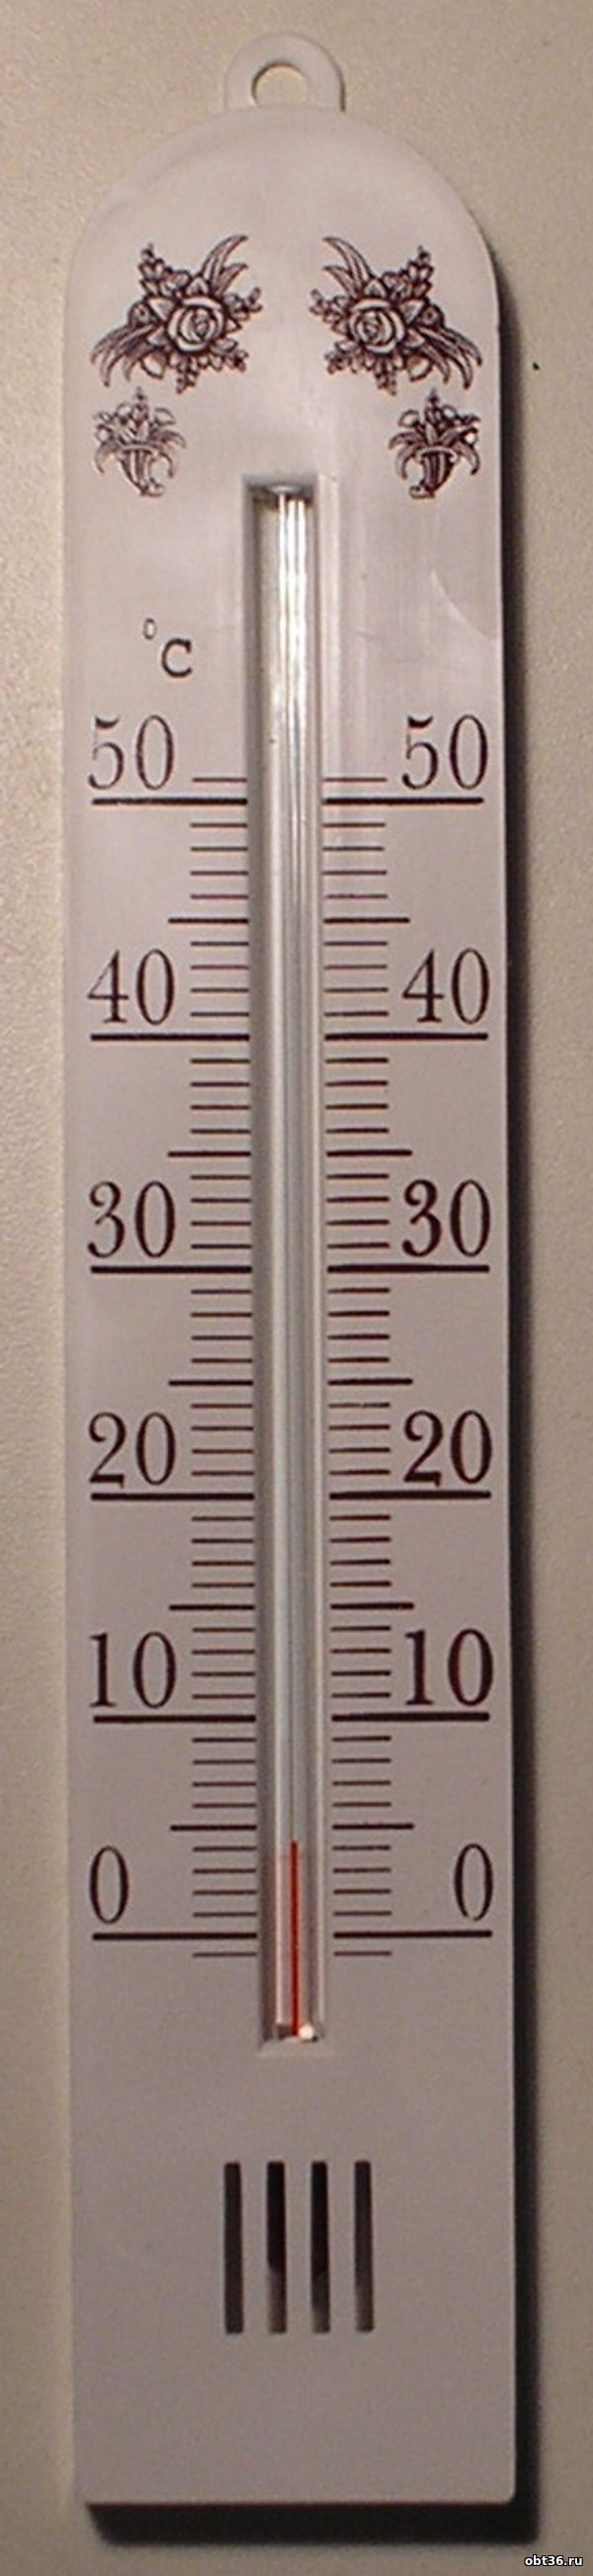 комнатный термометр бланш п.голынки руднянский район смоленская область